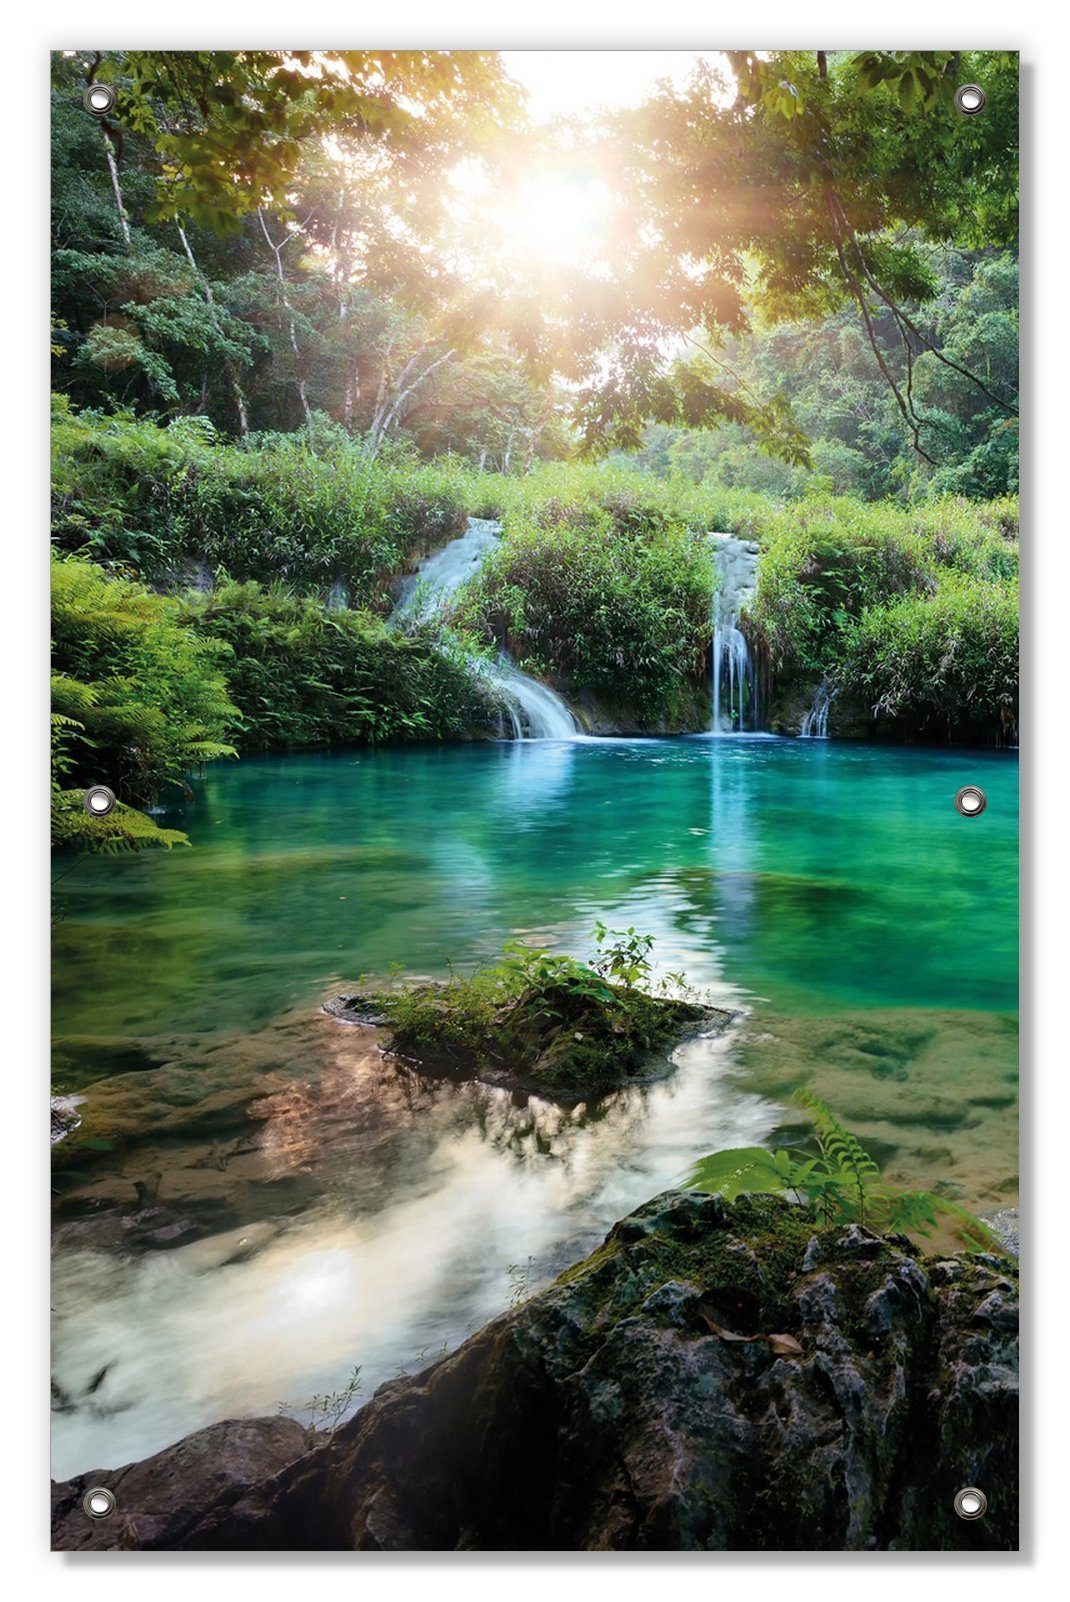 wiederverwendbar Nationalpark Guatemala, im See mit Sonnenschutz blickdicht, in und wiederablösbar Saugnäpfen, Türkisgrüner Wallario,